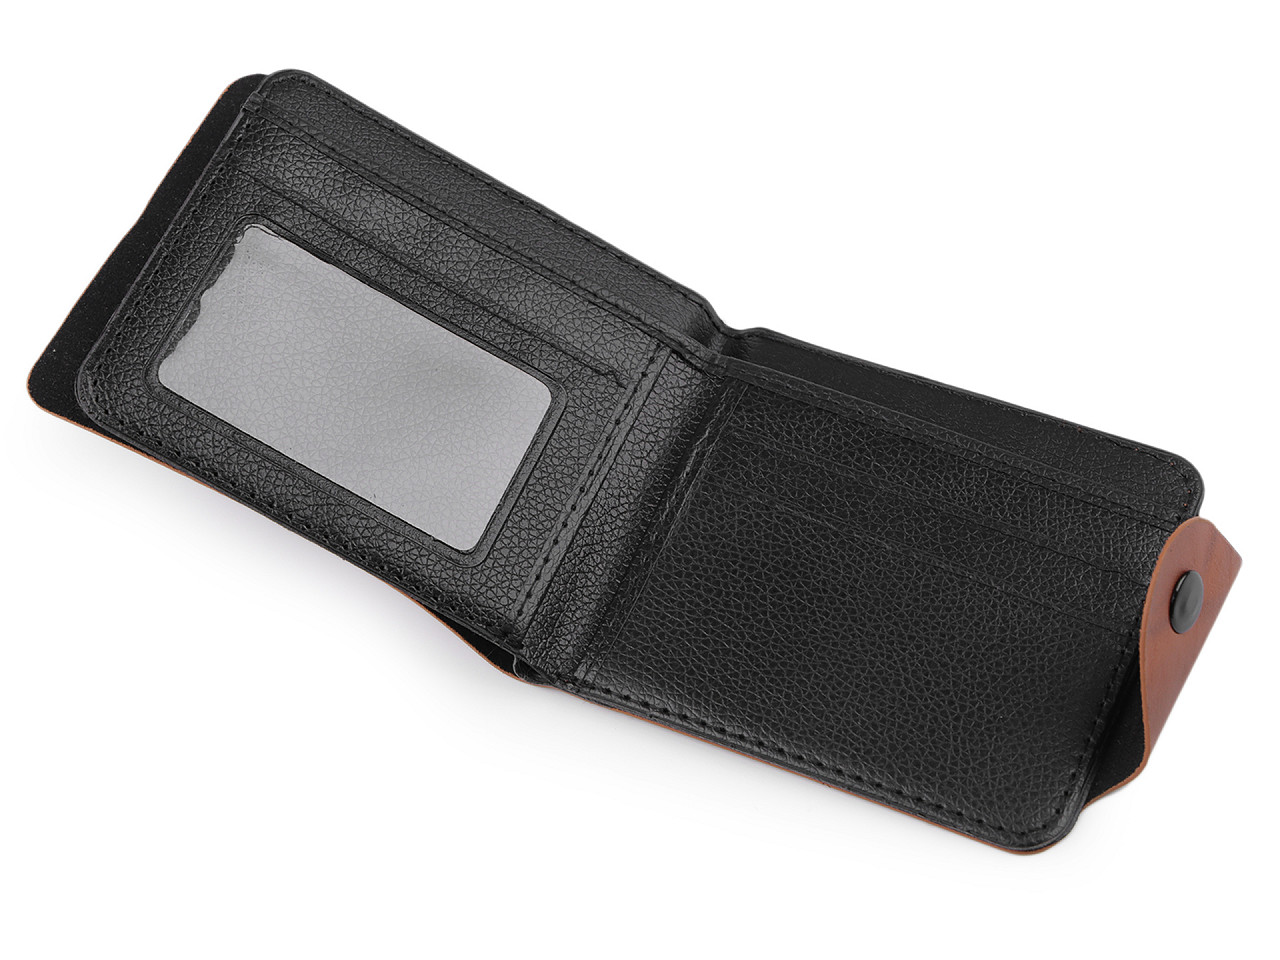 Herren-Brieftasche 9,5x12 cm, schwarz, 1 Stk.